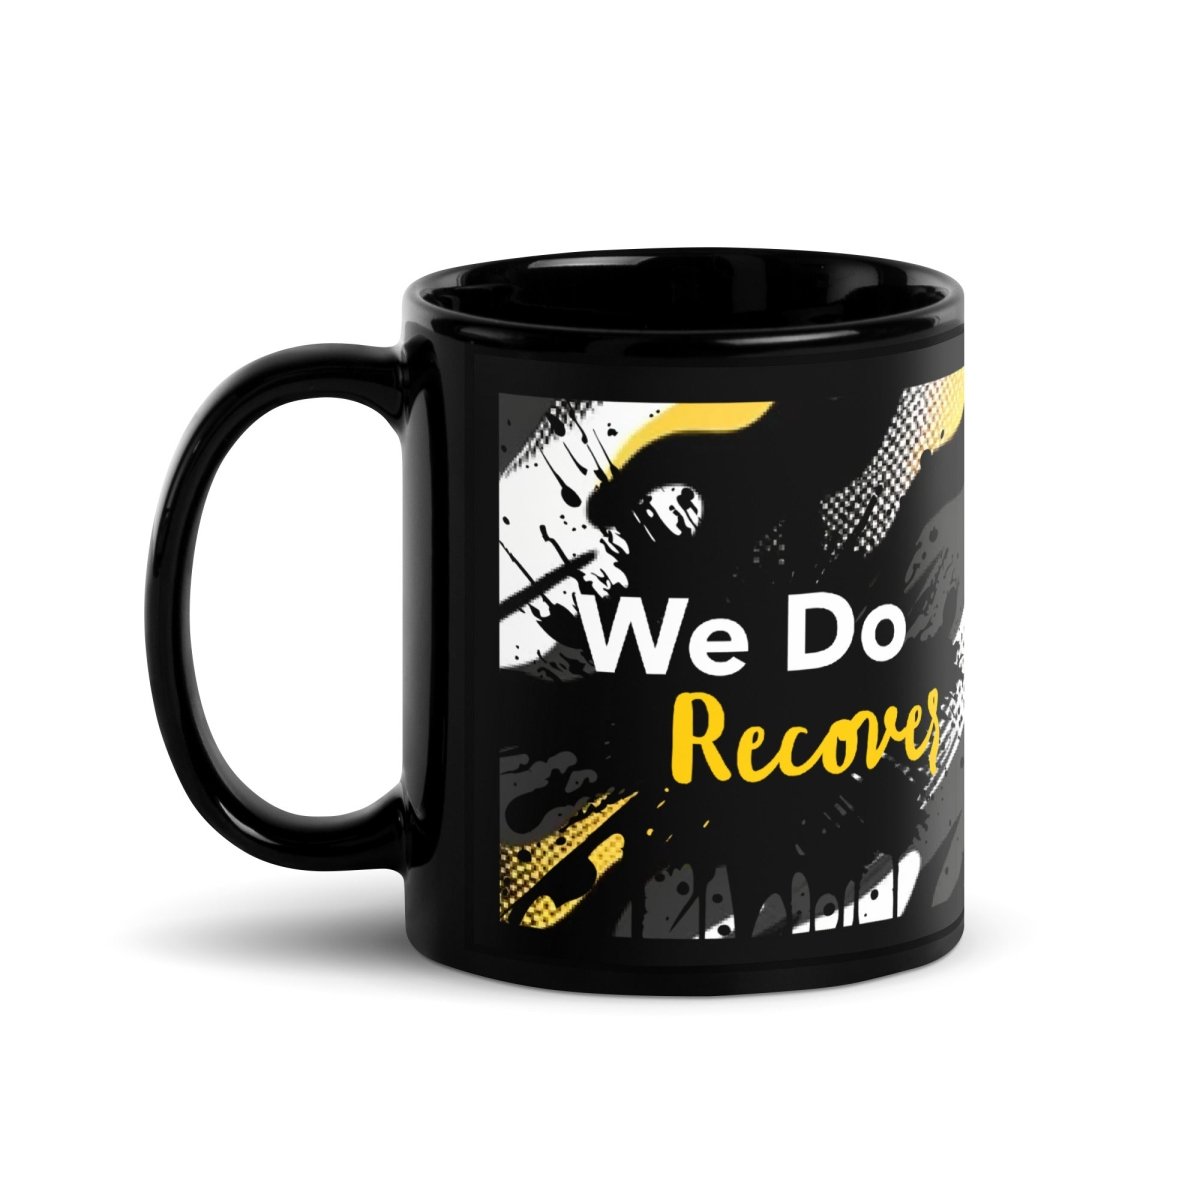 We Do Recover - Inspirational Recovery Mug - Sobervation